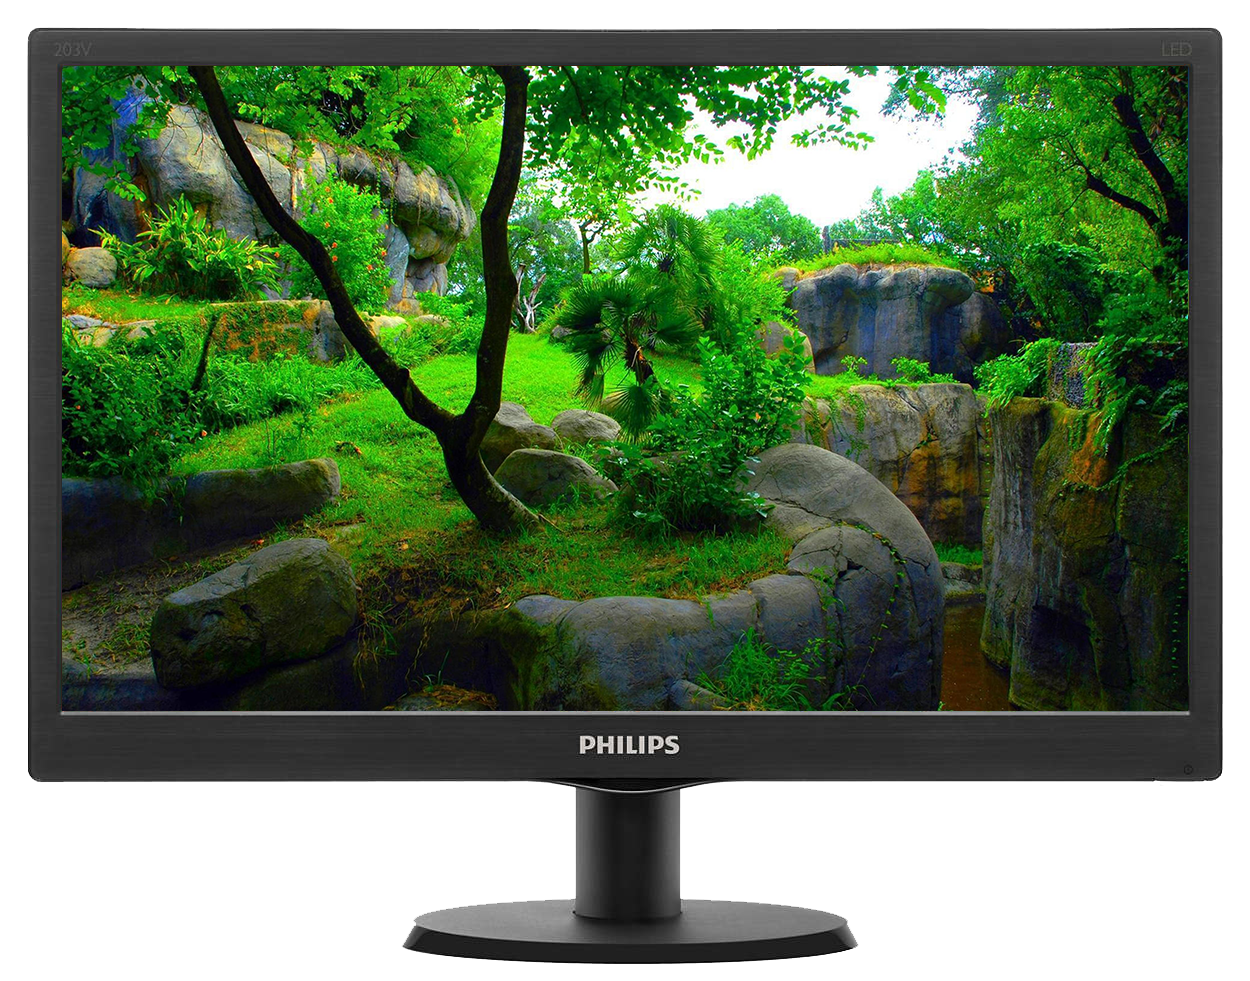 Philips 203v. Монитор Philips 203v5l. Philips LCD Monitor 193v5lsb2. Philips 203v5 LCD. Филипс 18